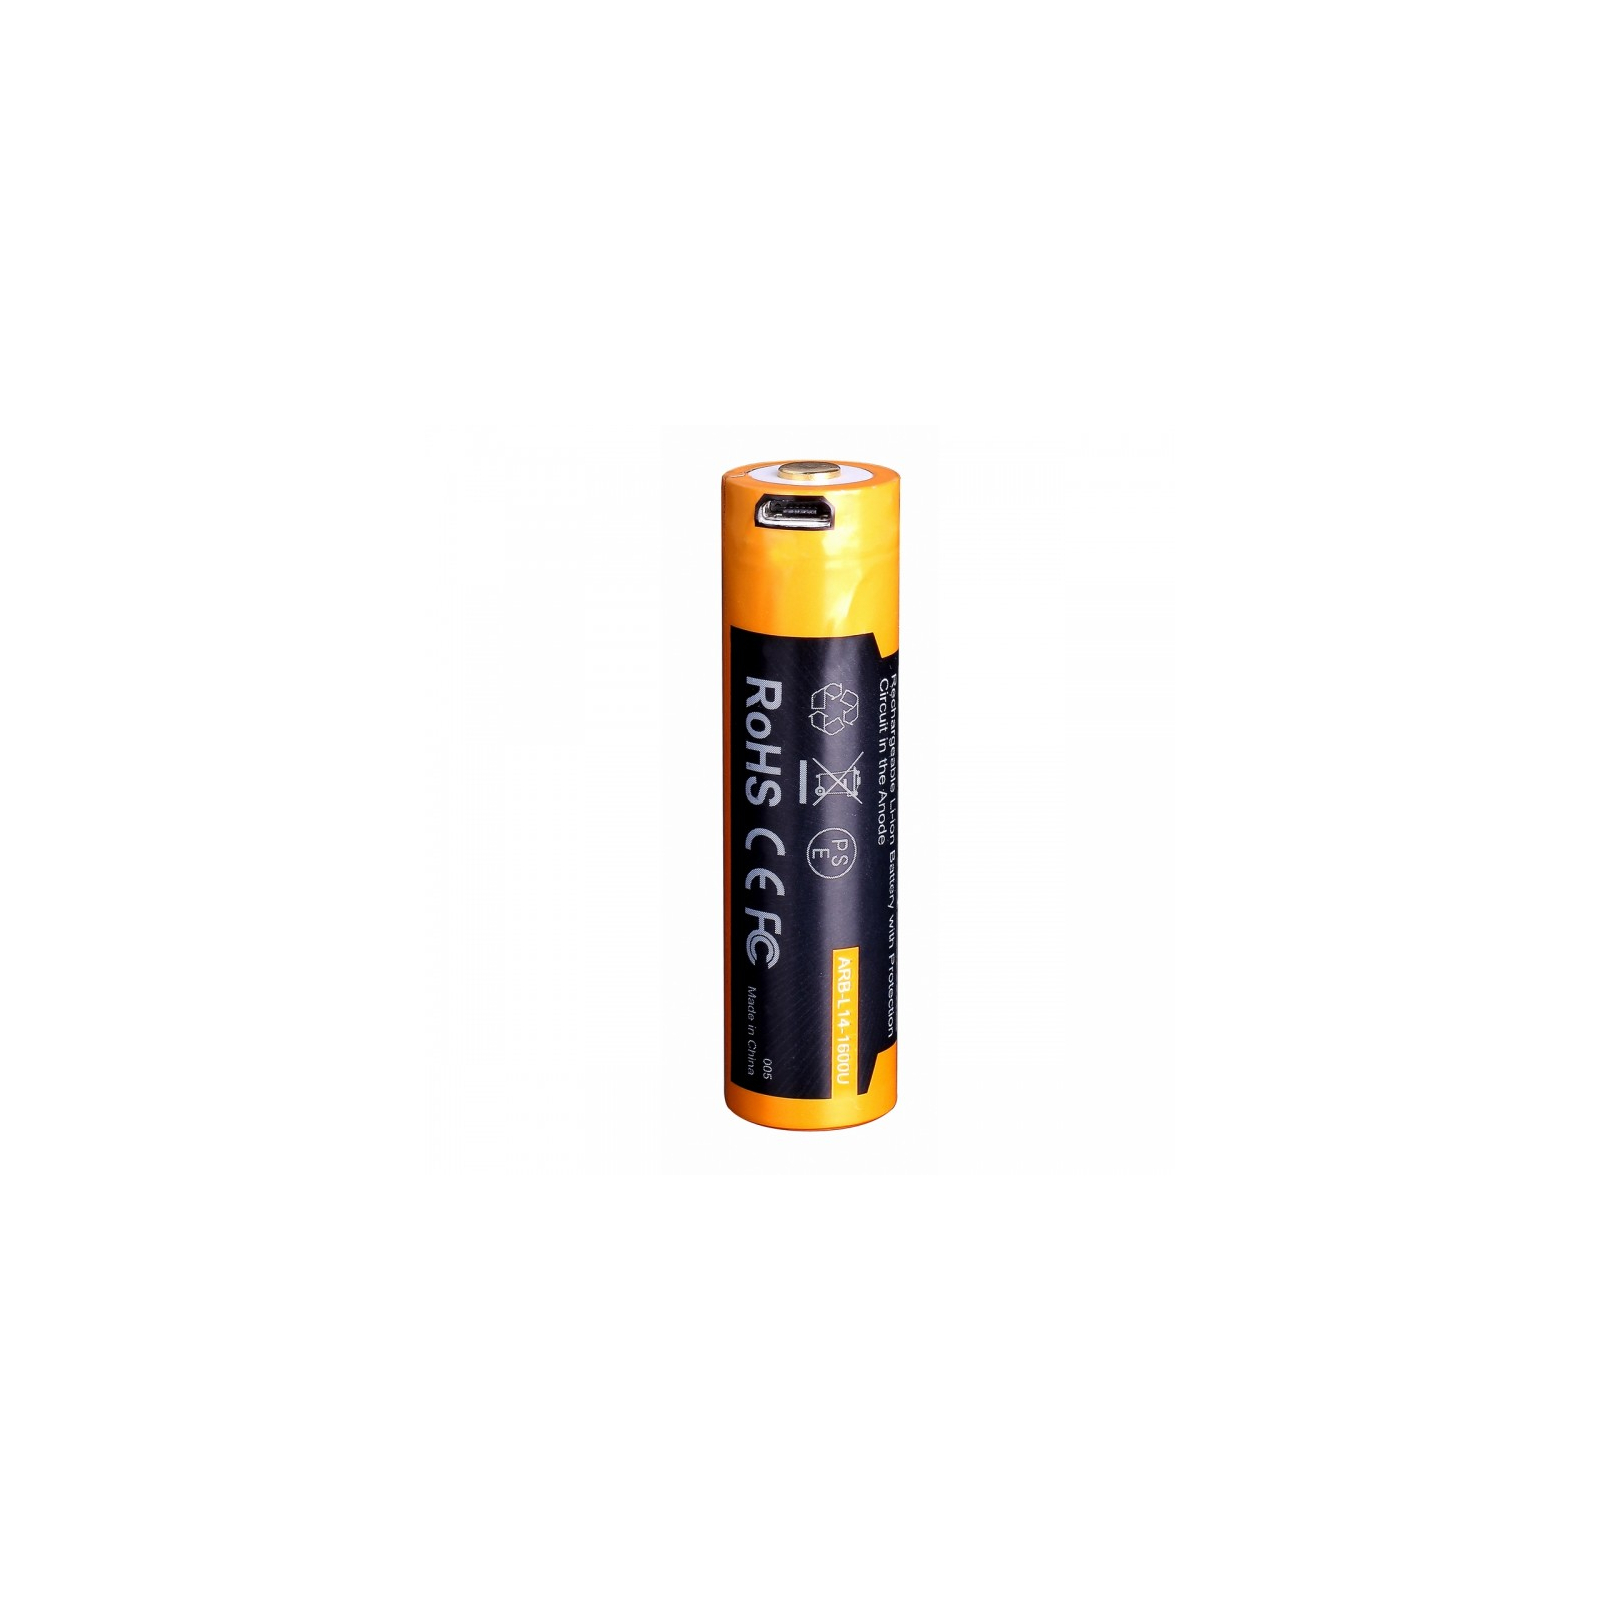 Аккумулятор Fenix 14500 micro usb зарядка (ARB-L14-1600U) изображение 4